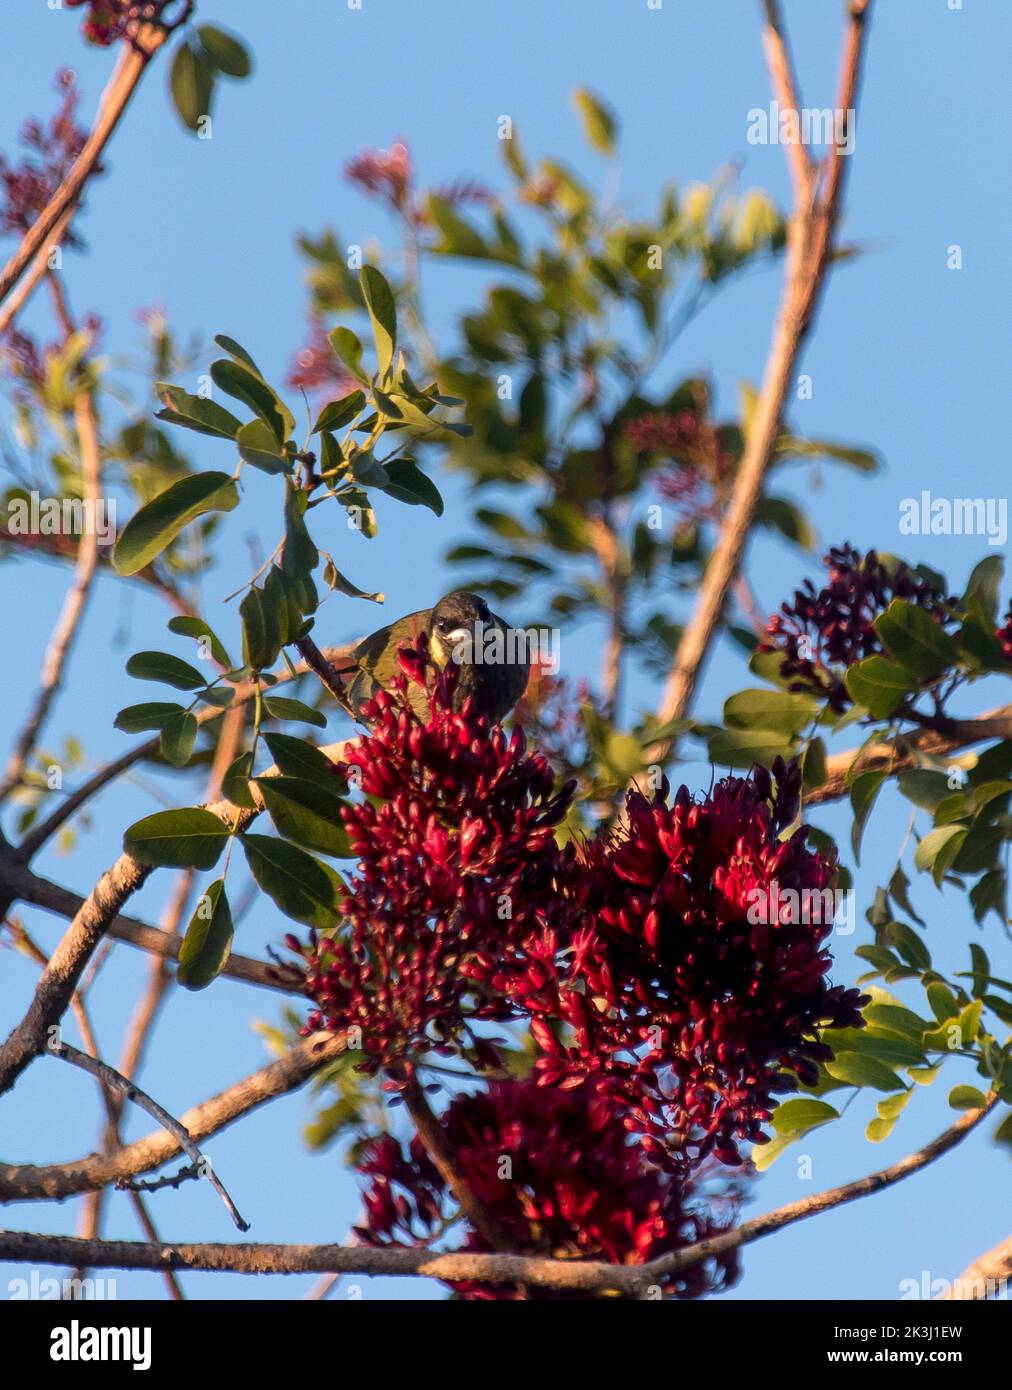 honeyeater de Lewins australiens, meliphaga lewinii, se nourrissant du nectar de fleurs rouges de Parrot ivre (goélette brachypetala), jardin dans le Queensland. Banque D'Images